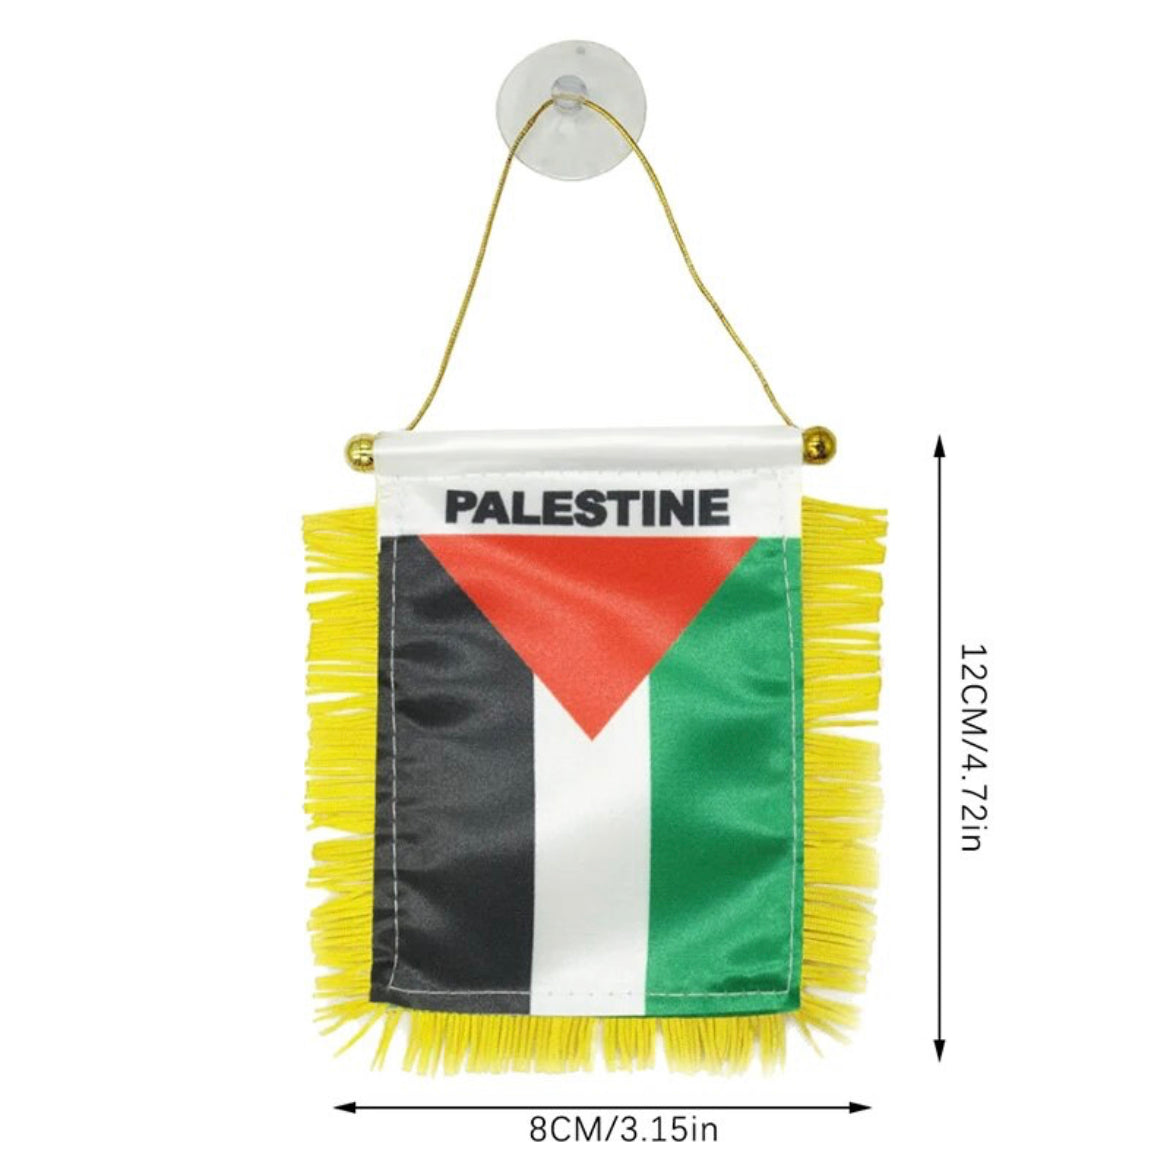 Palestina Hanger